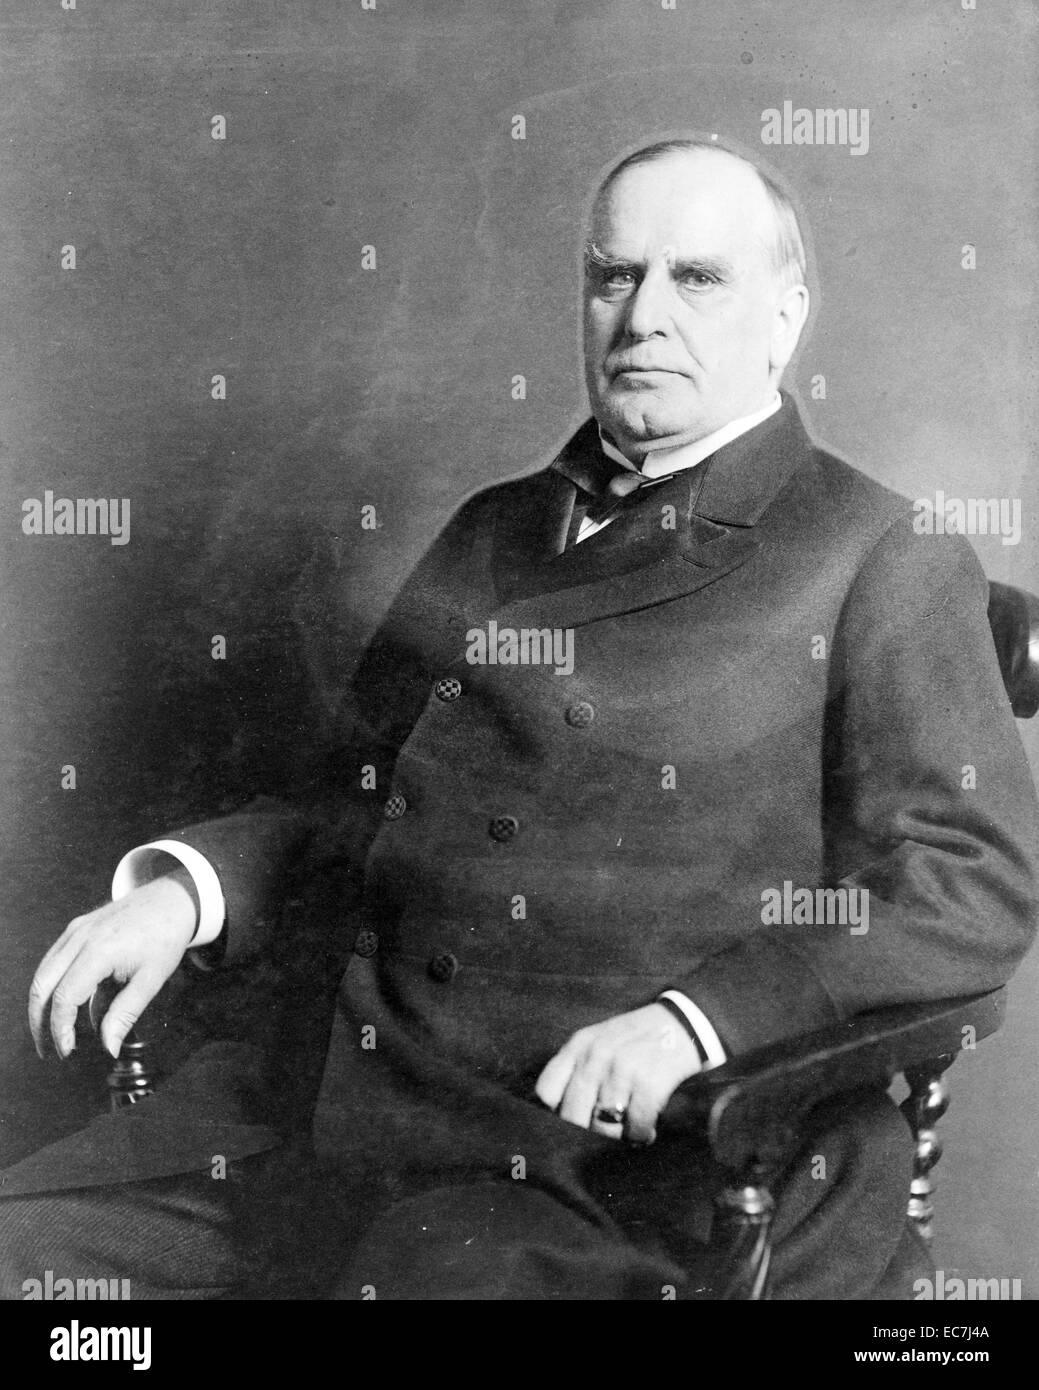 Tres cuartos de longitud retrato del presidente William McKinley. Durante su tiempo como presidente de los Estados Unidos llevó a la victoria en la Guerra Hispano-Estadounidense y elevada protección arancelaria para promover la industria norteamericana. Foto de stock